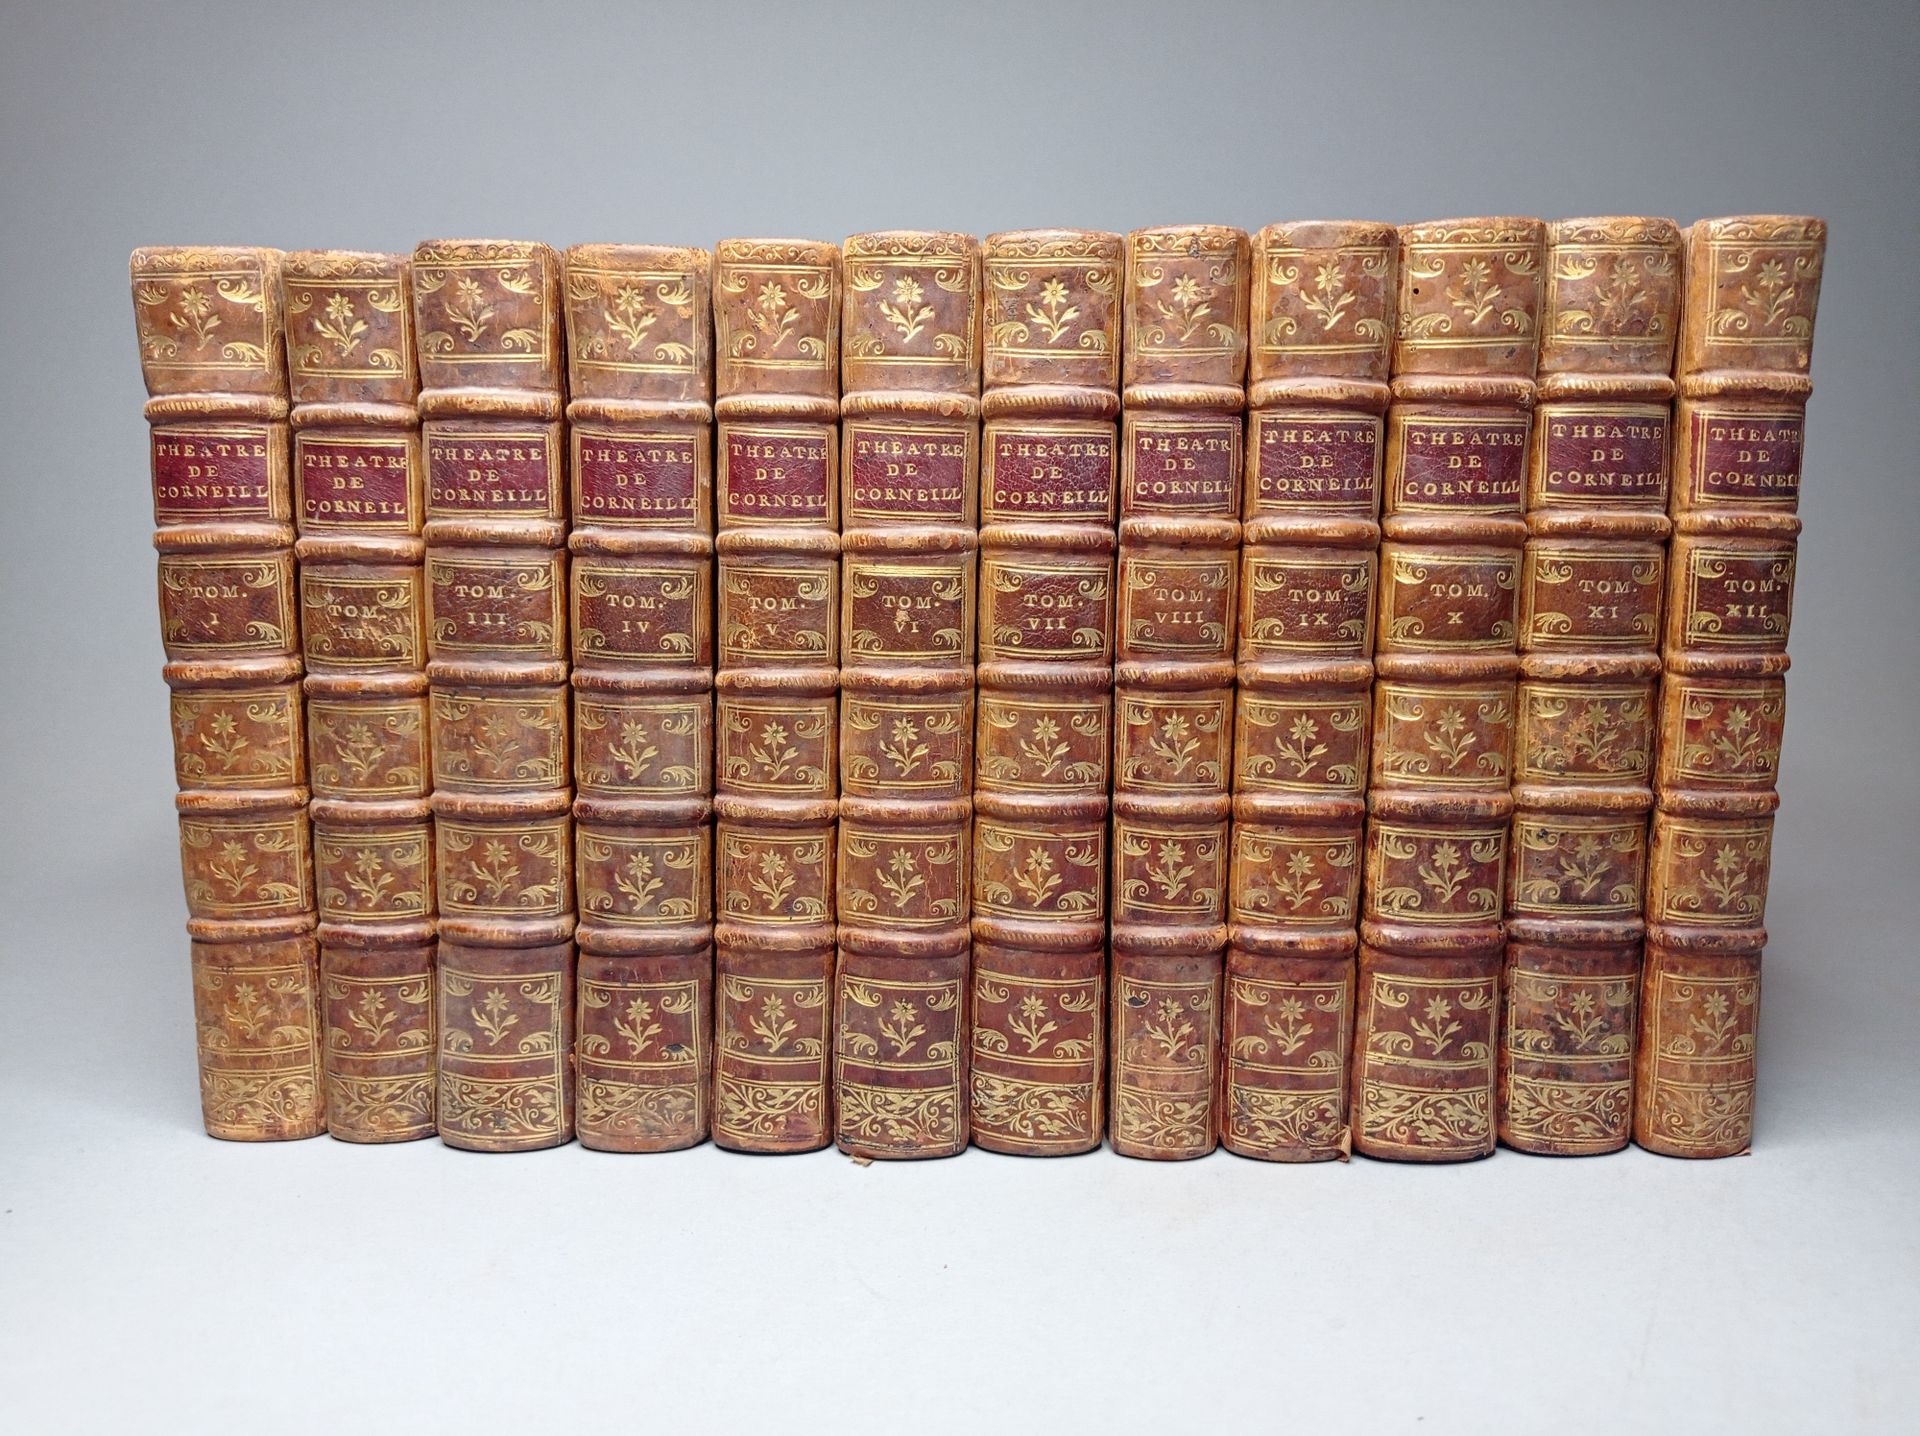 Null CORNEILLE（皮埃尔）。剧院。S.L., 1764.12卷8开本，大理石花纹小牛皮，冷边，书脊有装饰，蓝色斑点的边缘（当时的装订）。伏尔泰在日内&hellip;